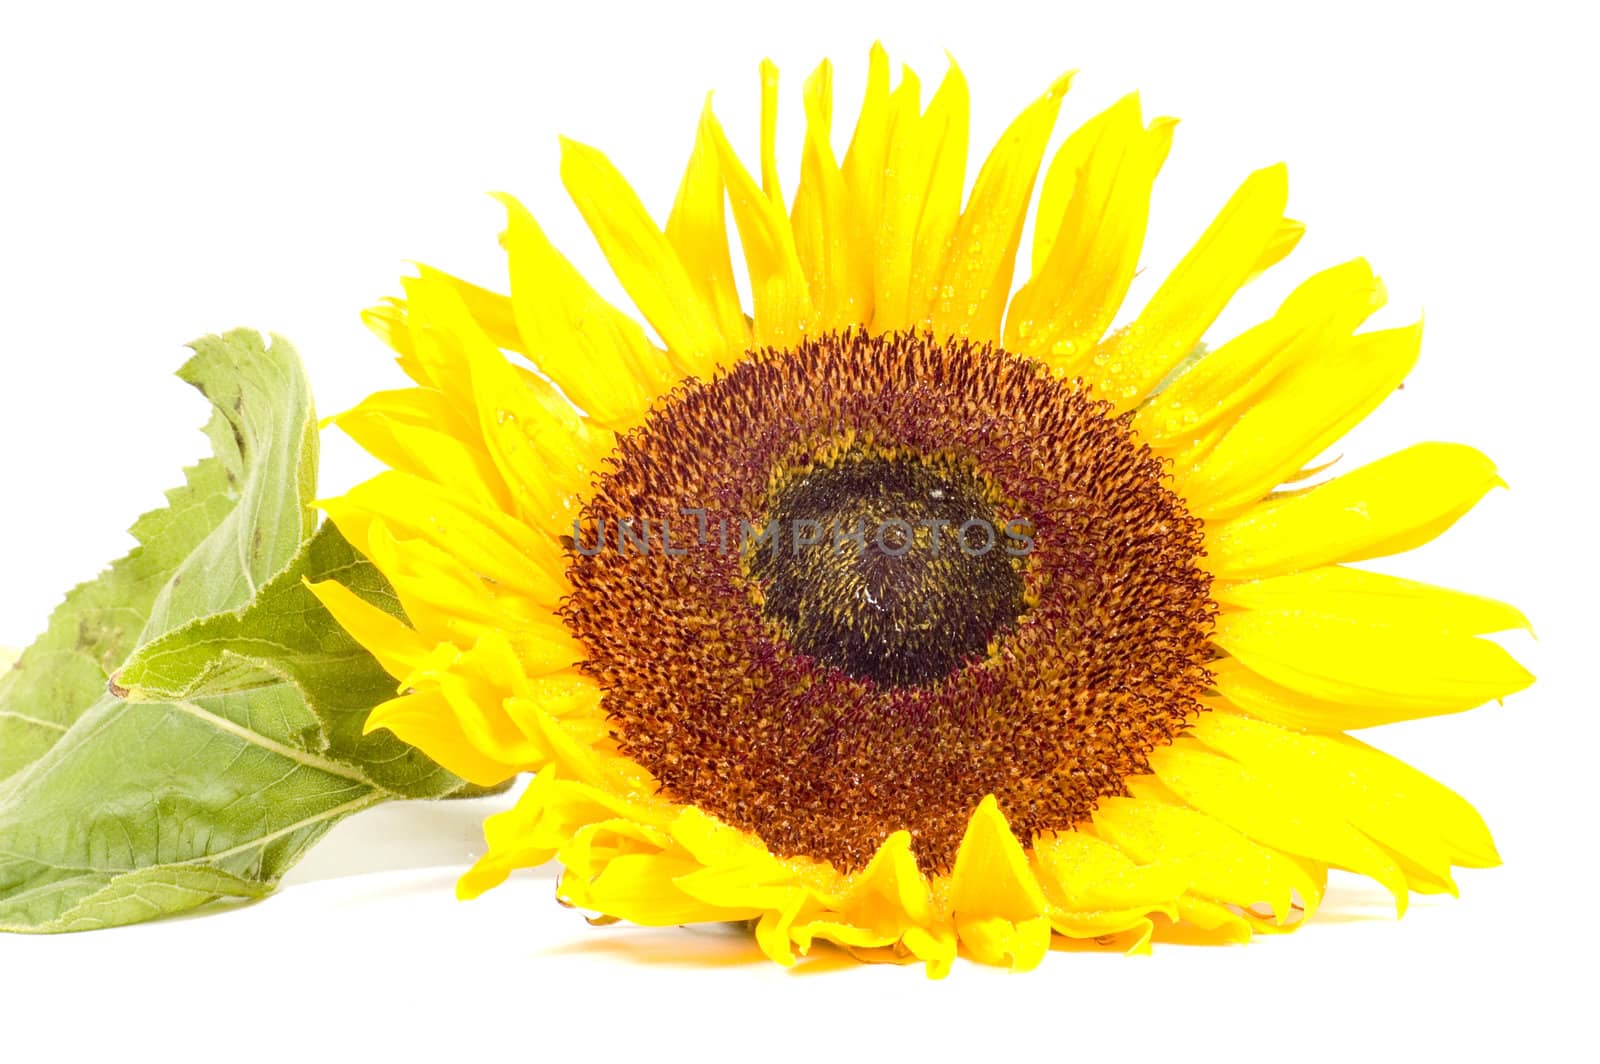 Single sunflower isolated on white background